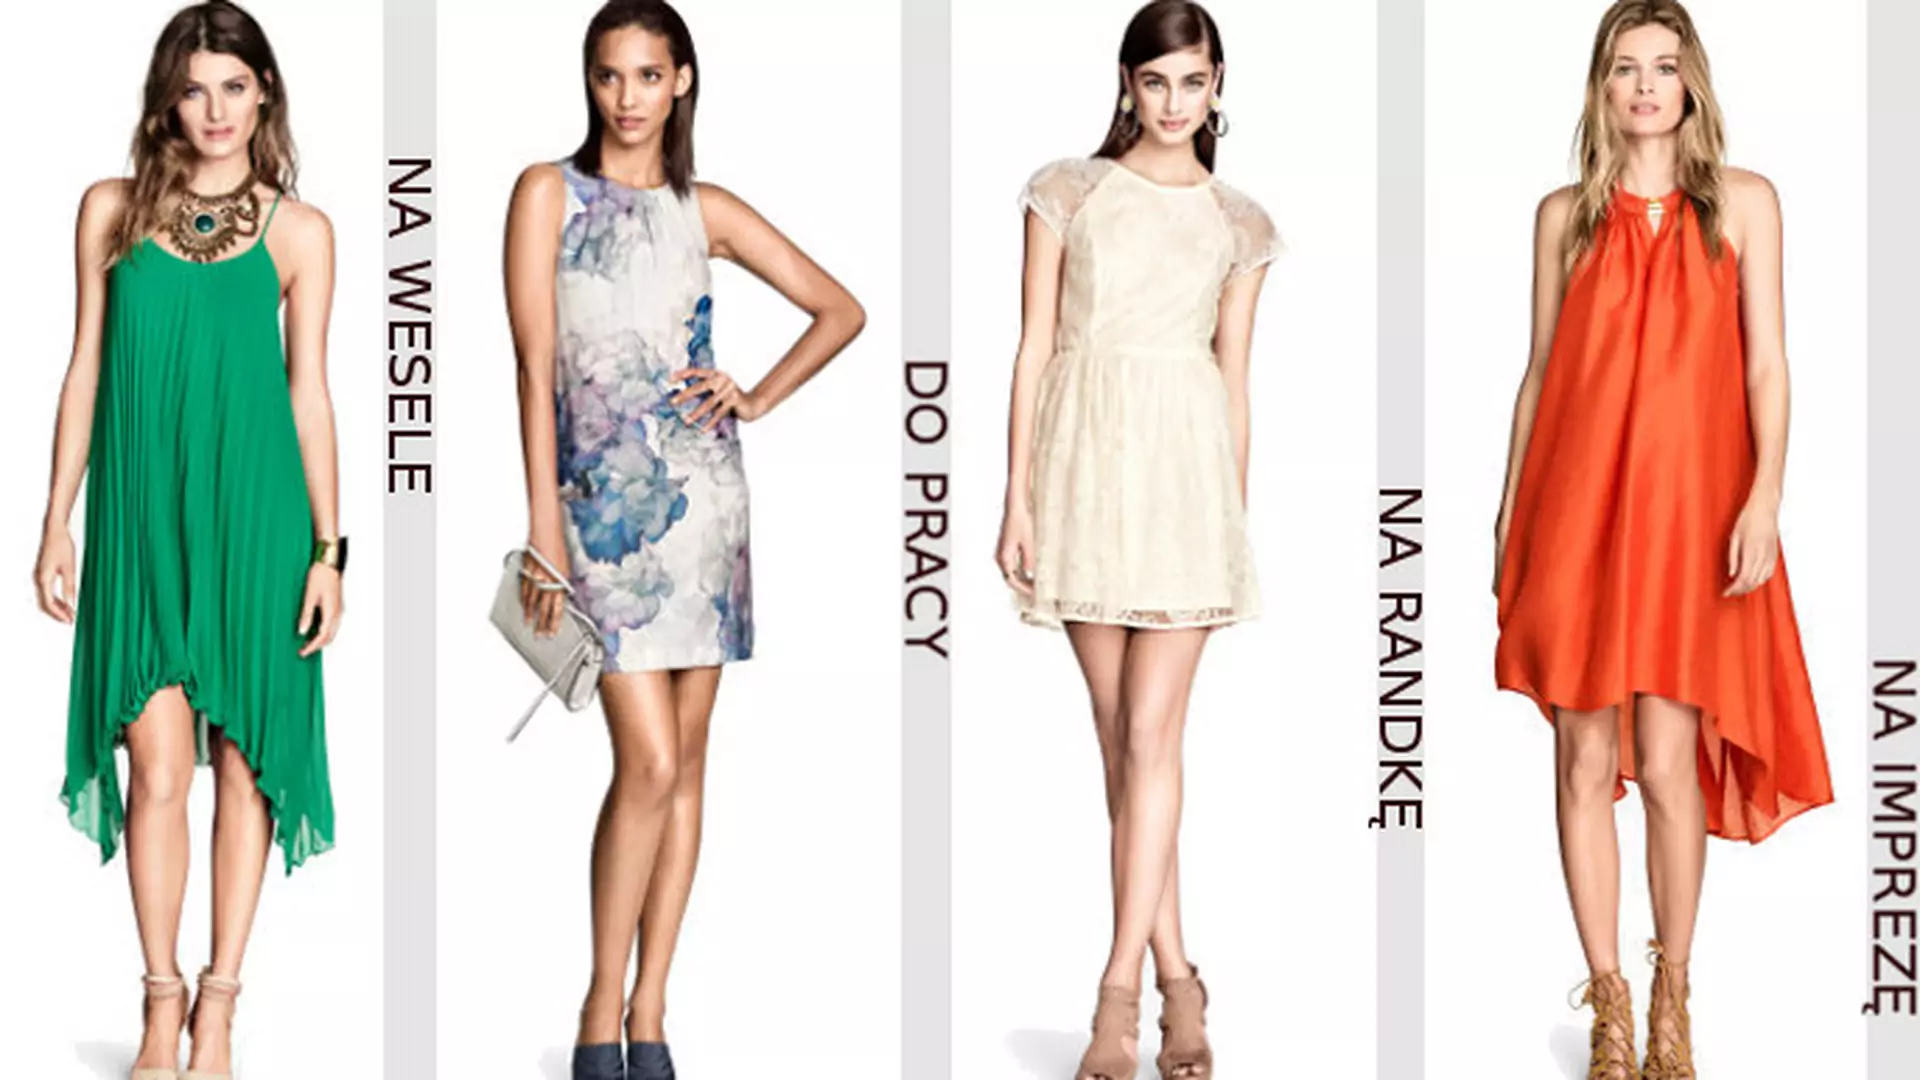 Wiosenne sukienki H&M do 100 zł w 5 stylizacjach na różne okazje